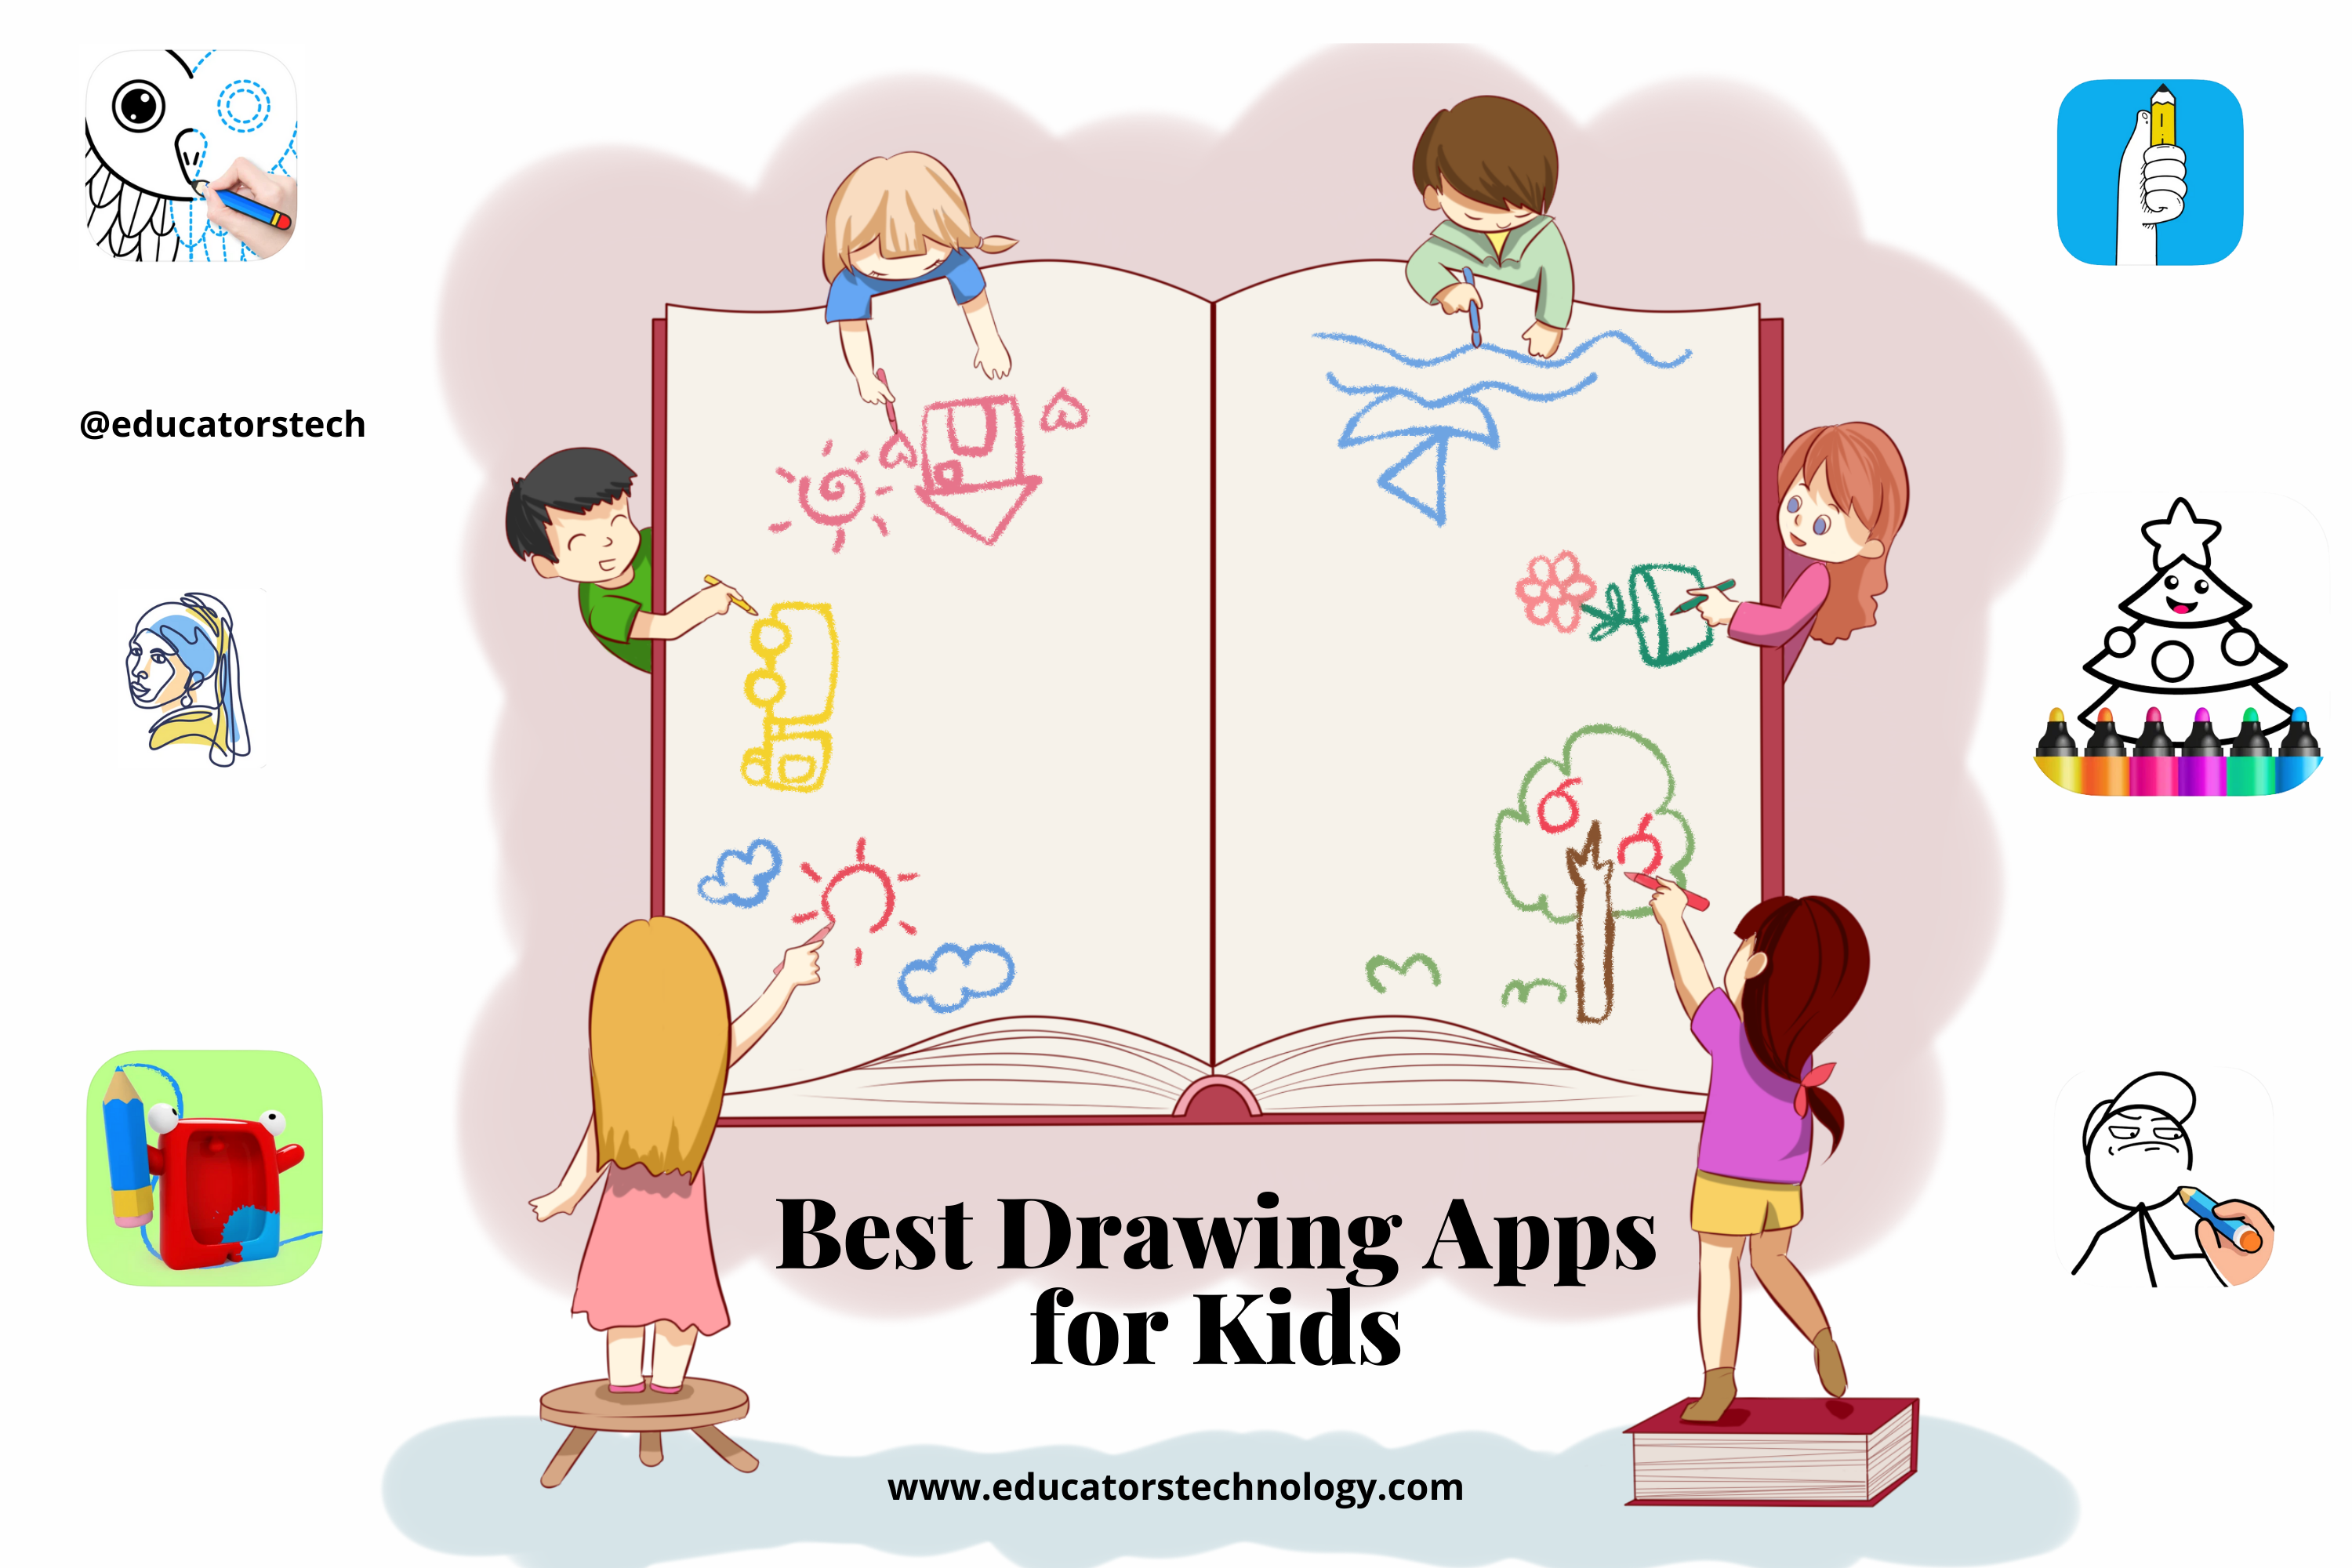 Las mejores aplicaciones de dibujo para niños.